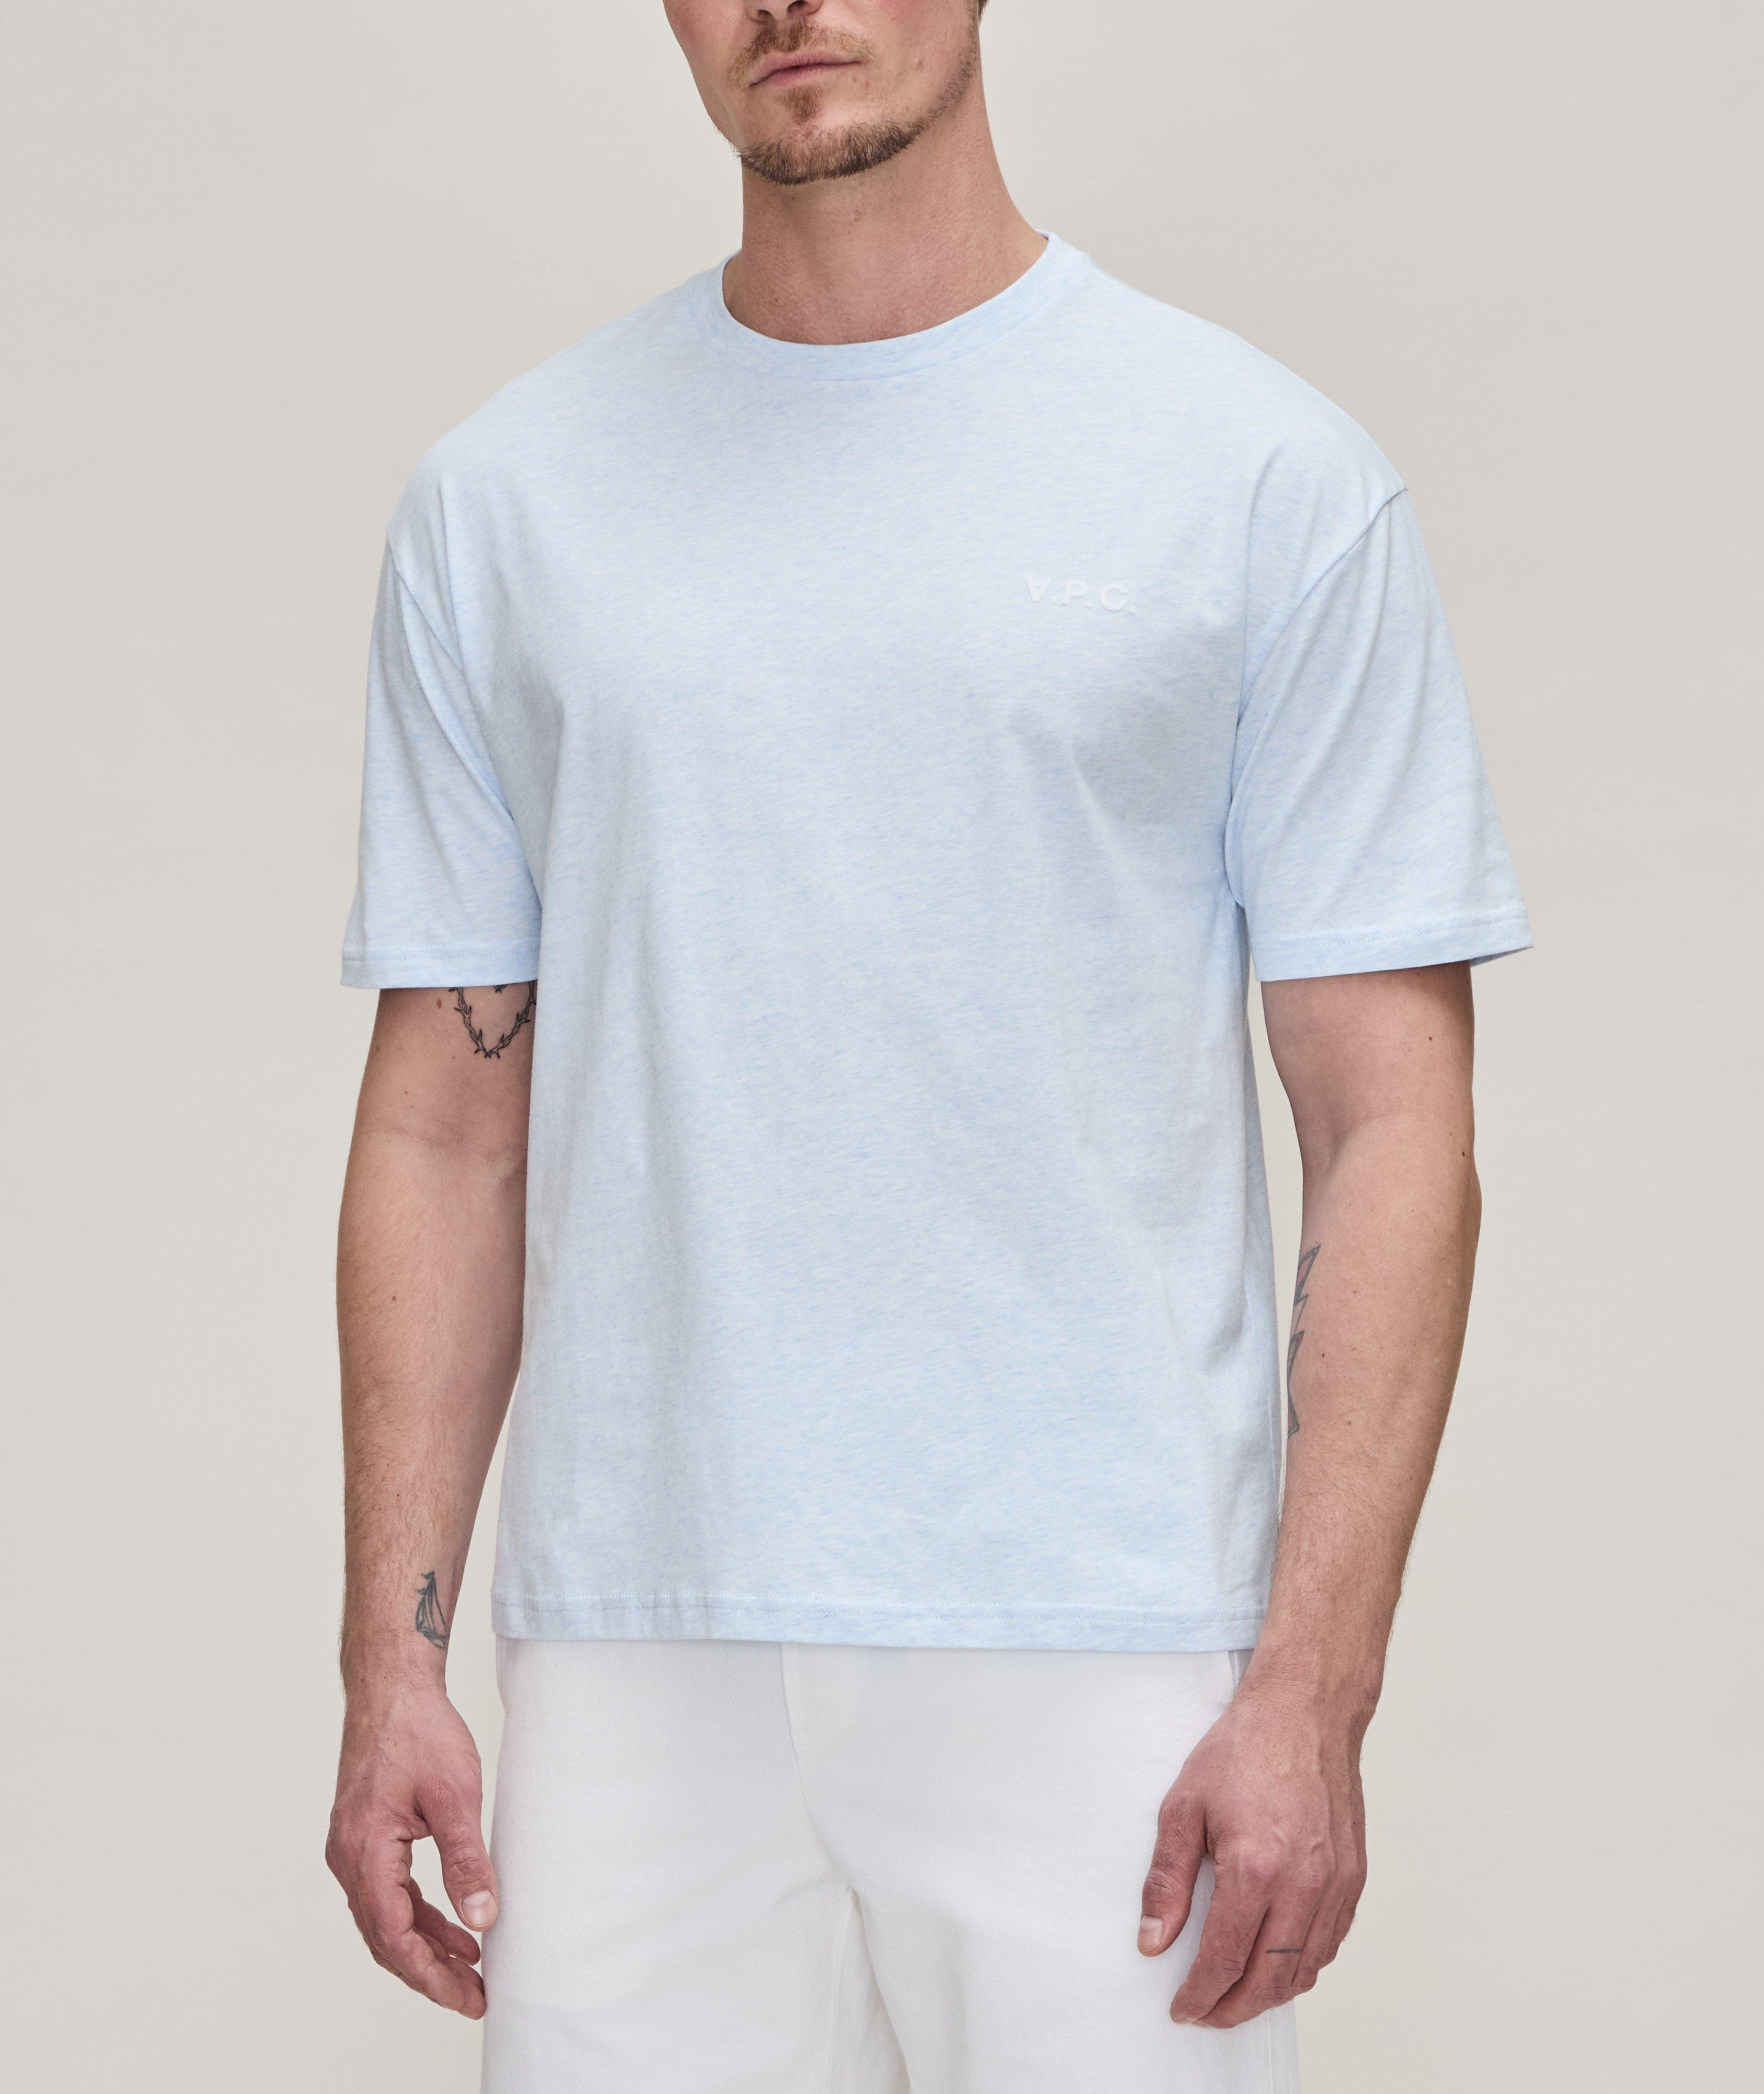 New Joachim Mélange Cotton T-Shirt